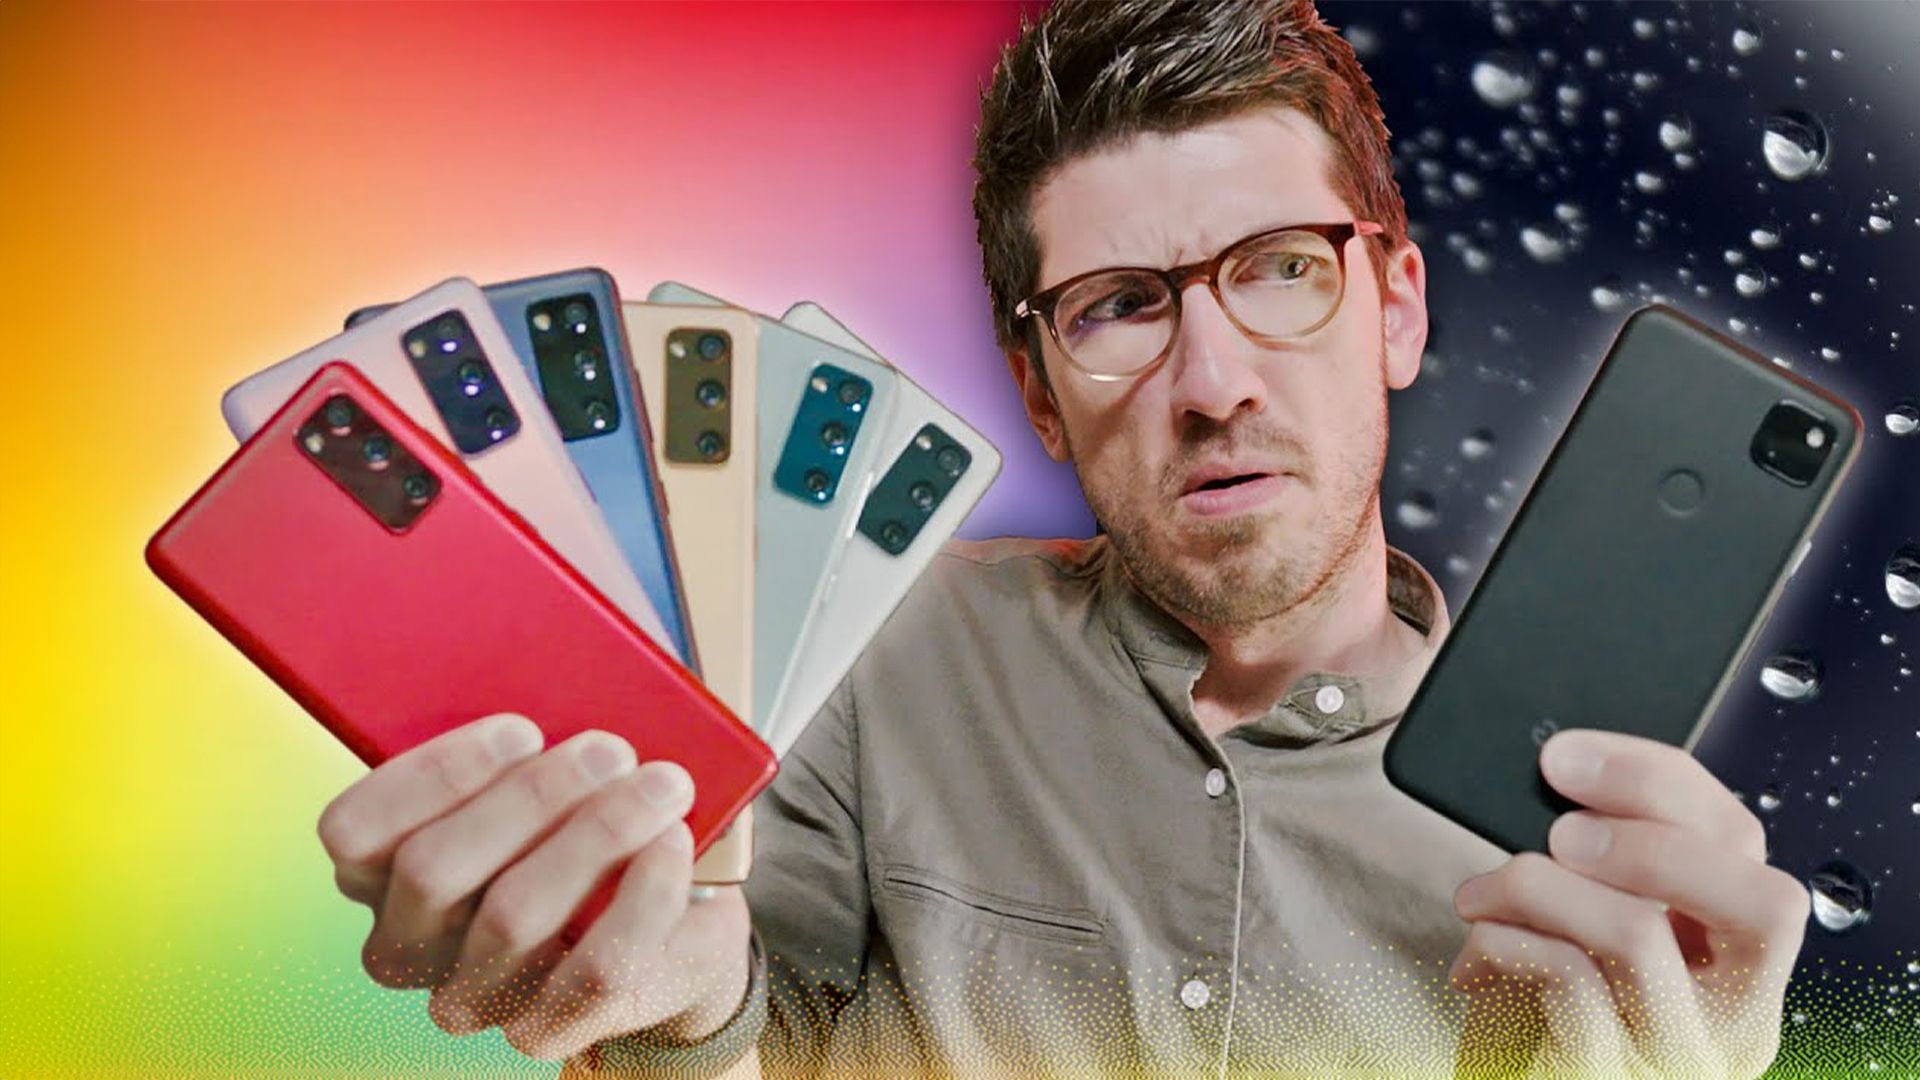 Warum kauft KEINER farbige Handys? - Galaxy S20 FE